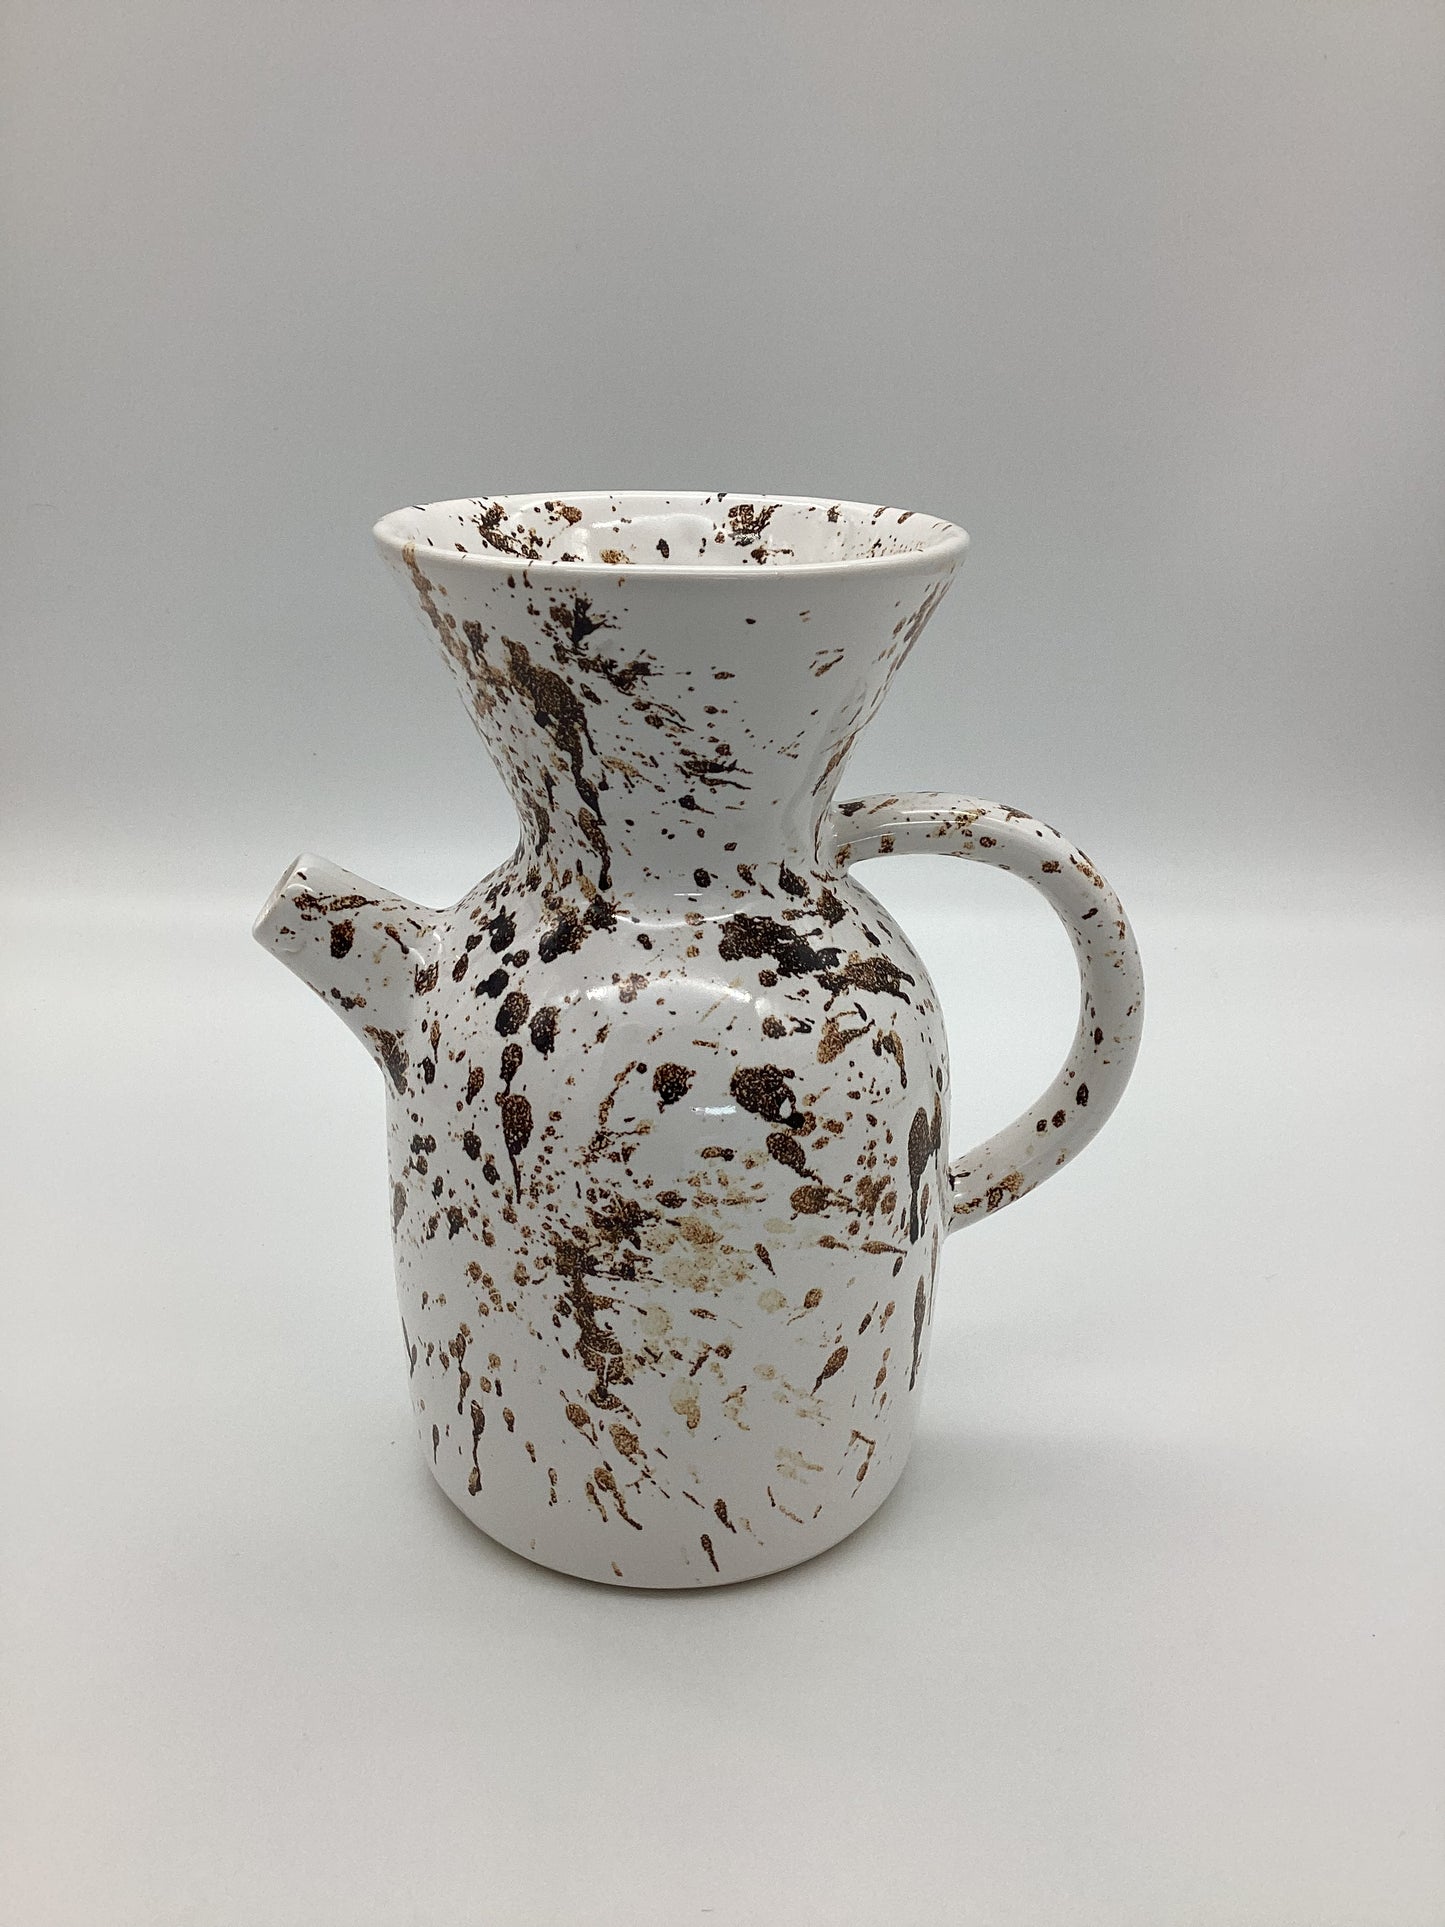 Ceramic Pour Over Coffee Maker